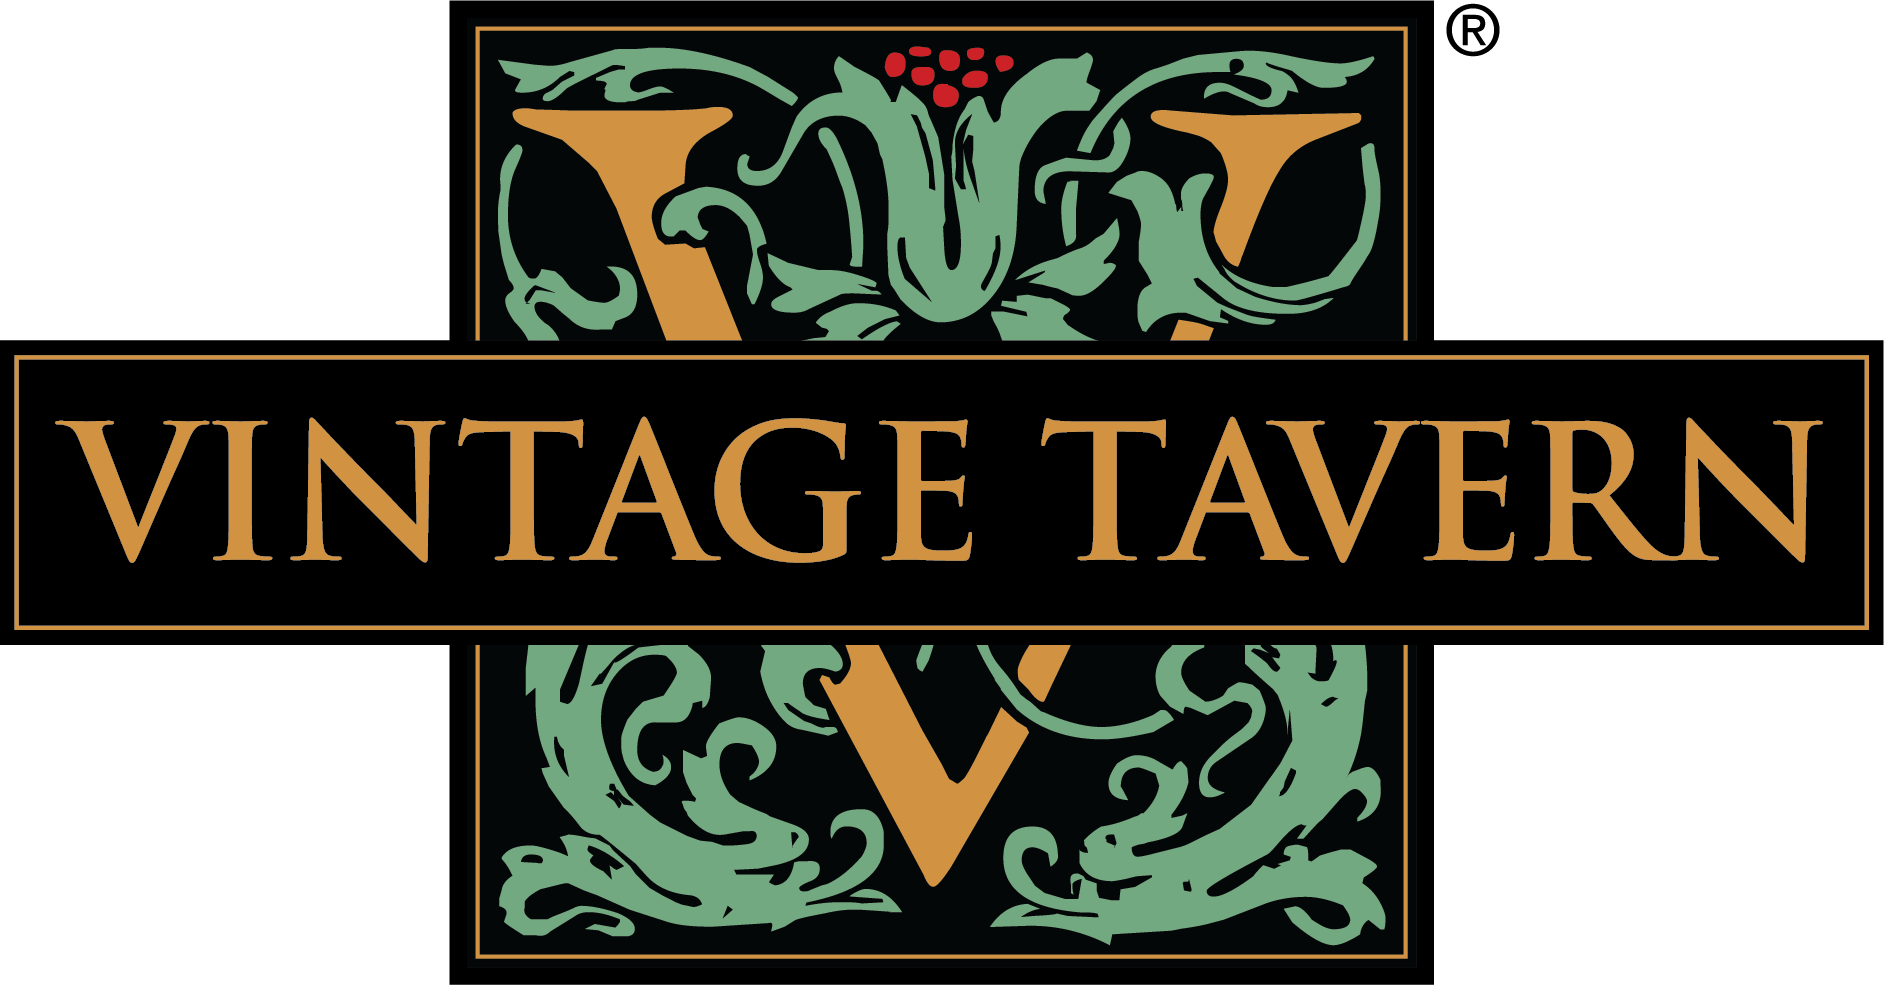 Vintage Tavern logo.png